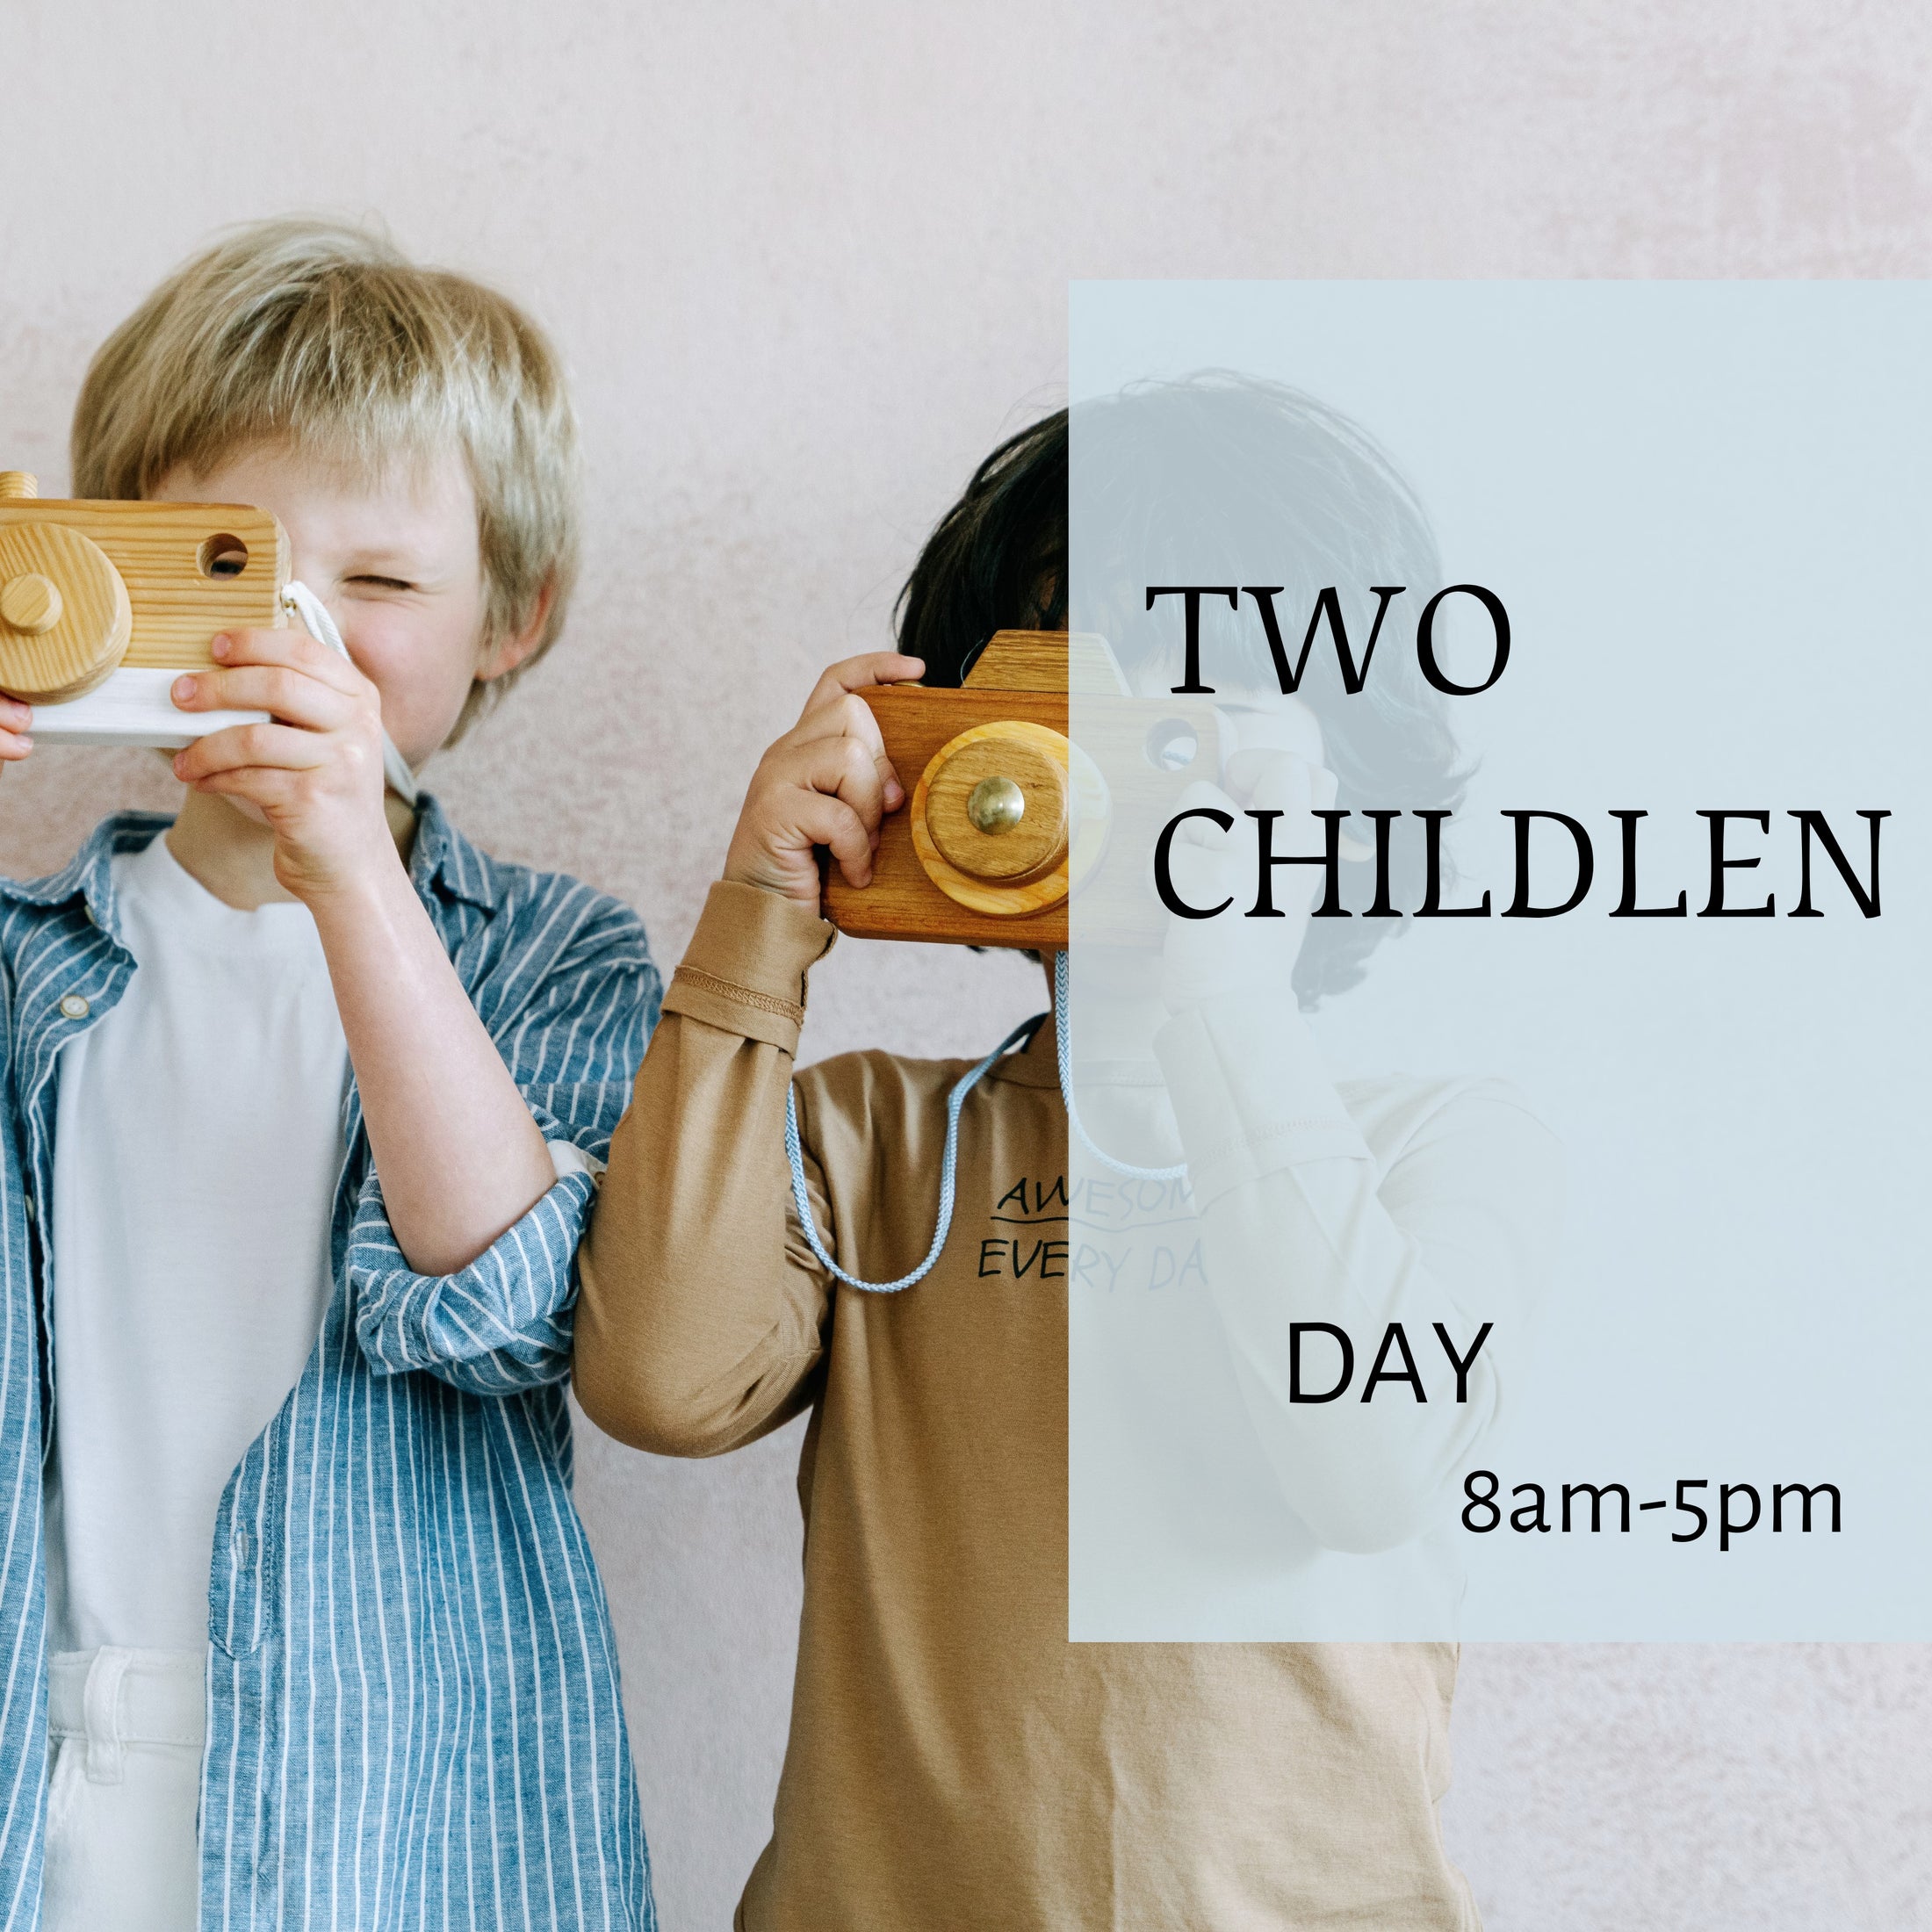 ◆ Day ◆ 2 Children (8AM-5PM)